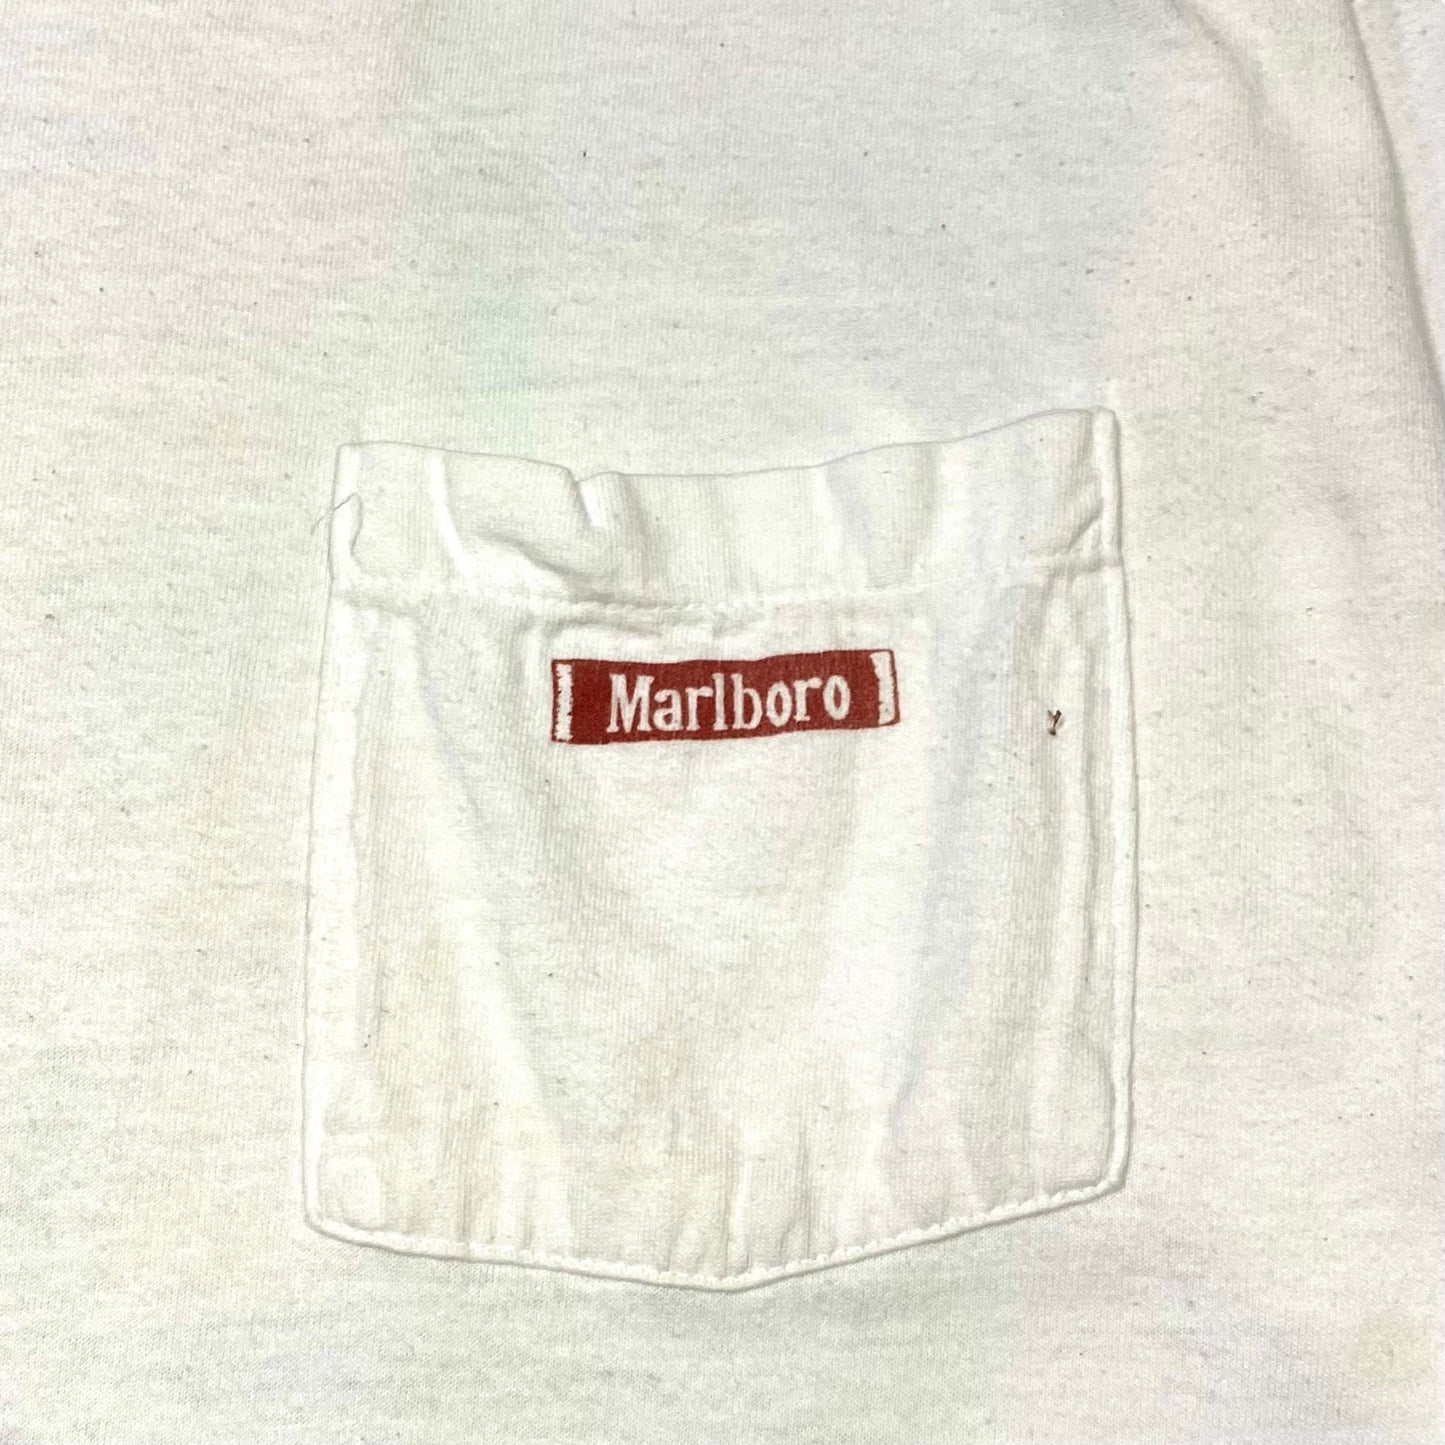 90's "Marlboro" T-shirt